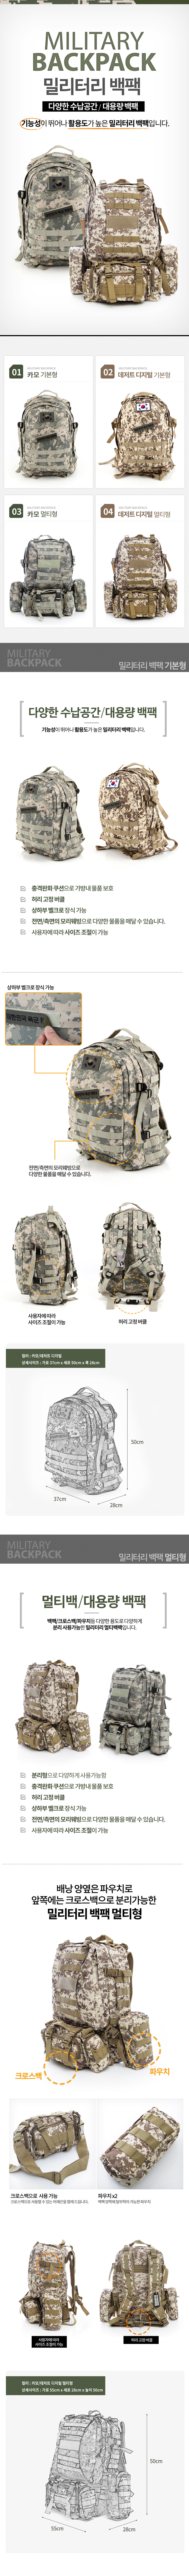 backpack_new.jpg